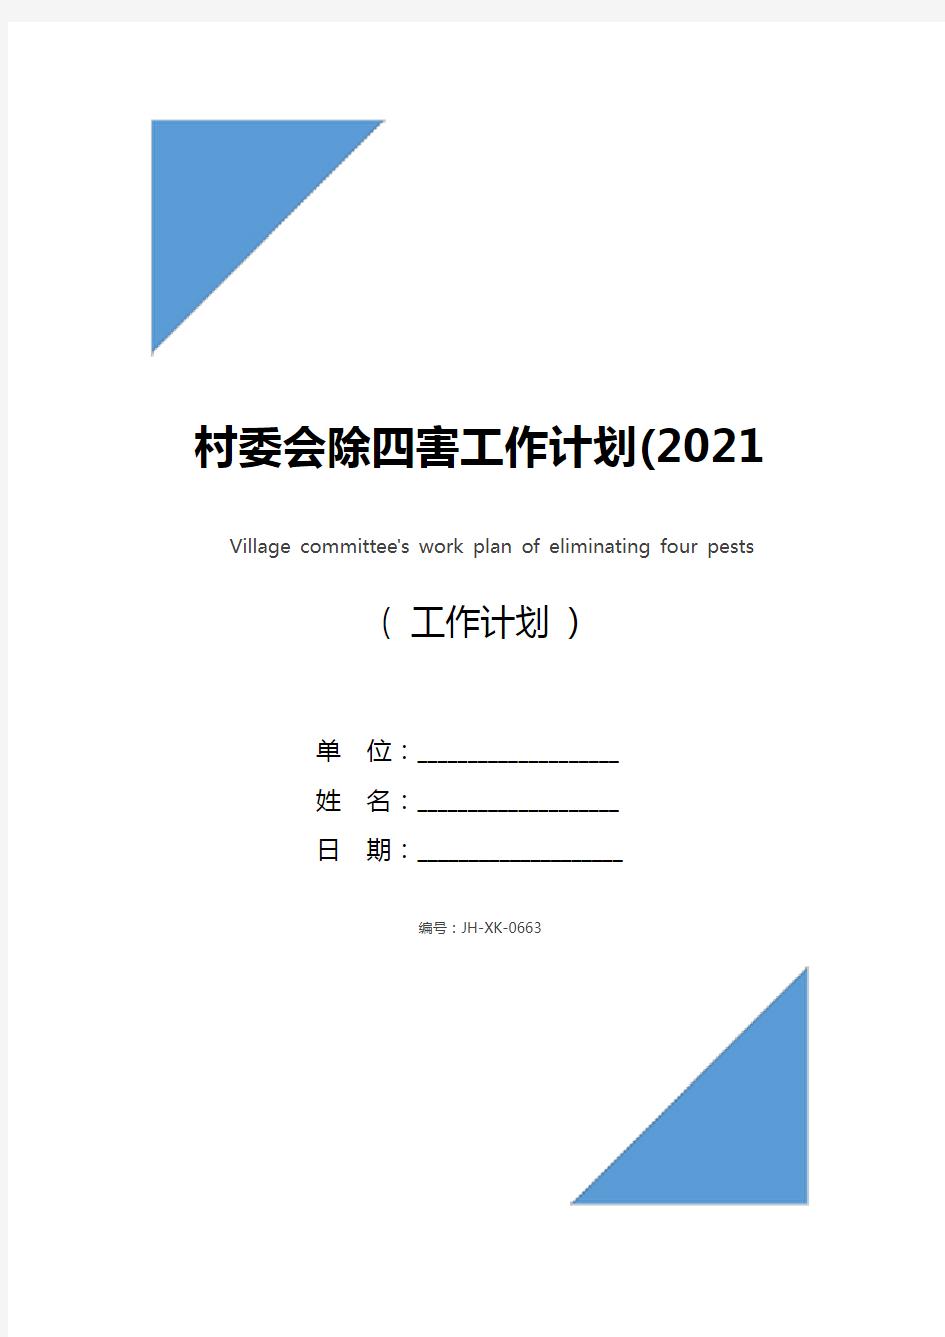 村委会除四害工作计划(2021新版)